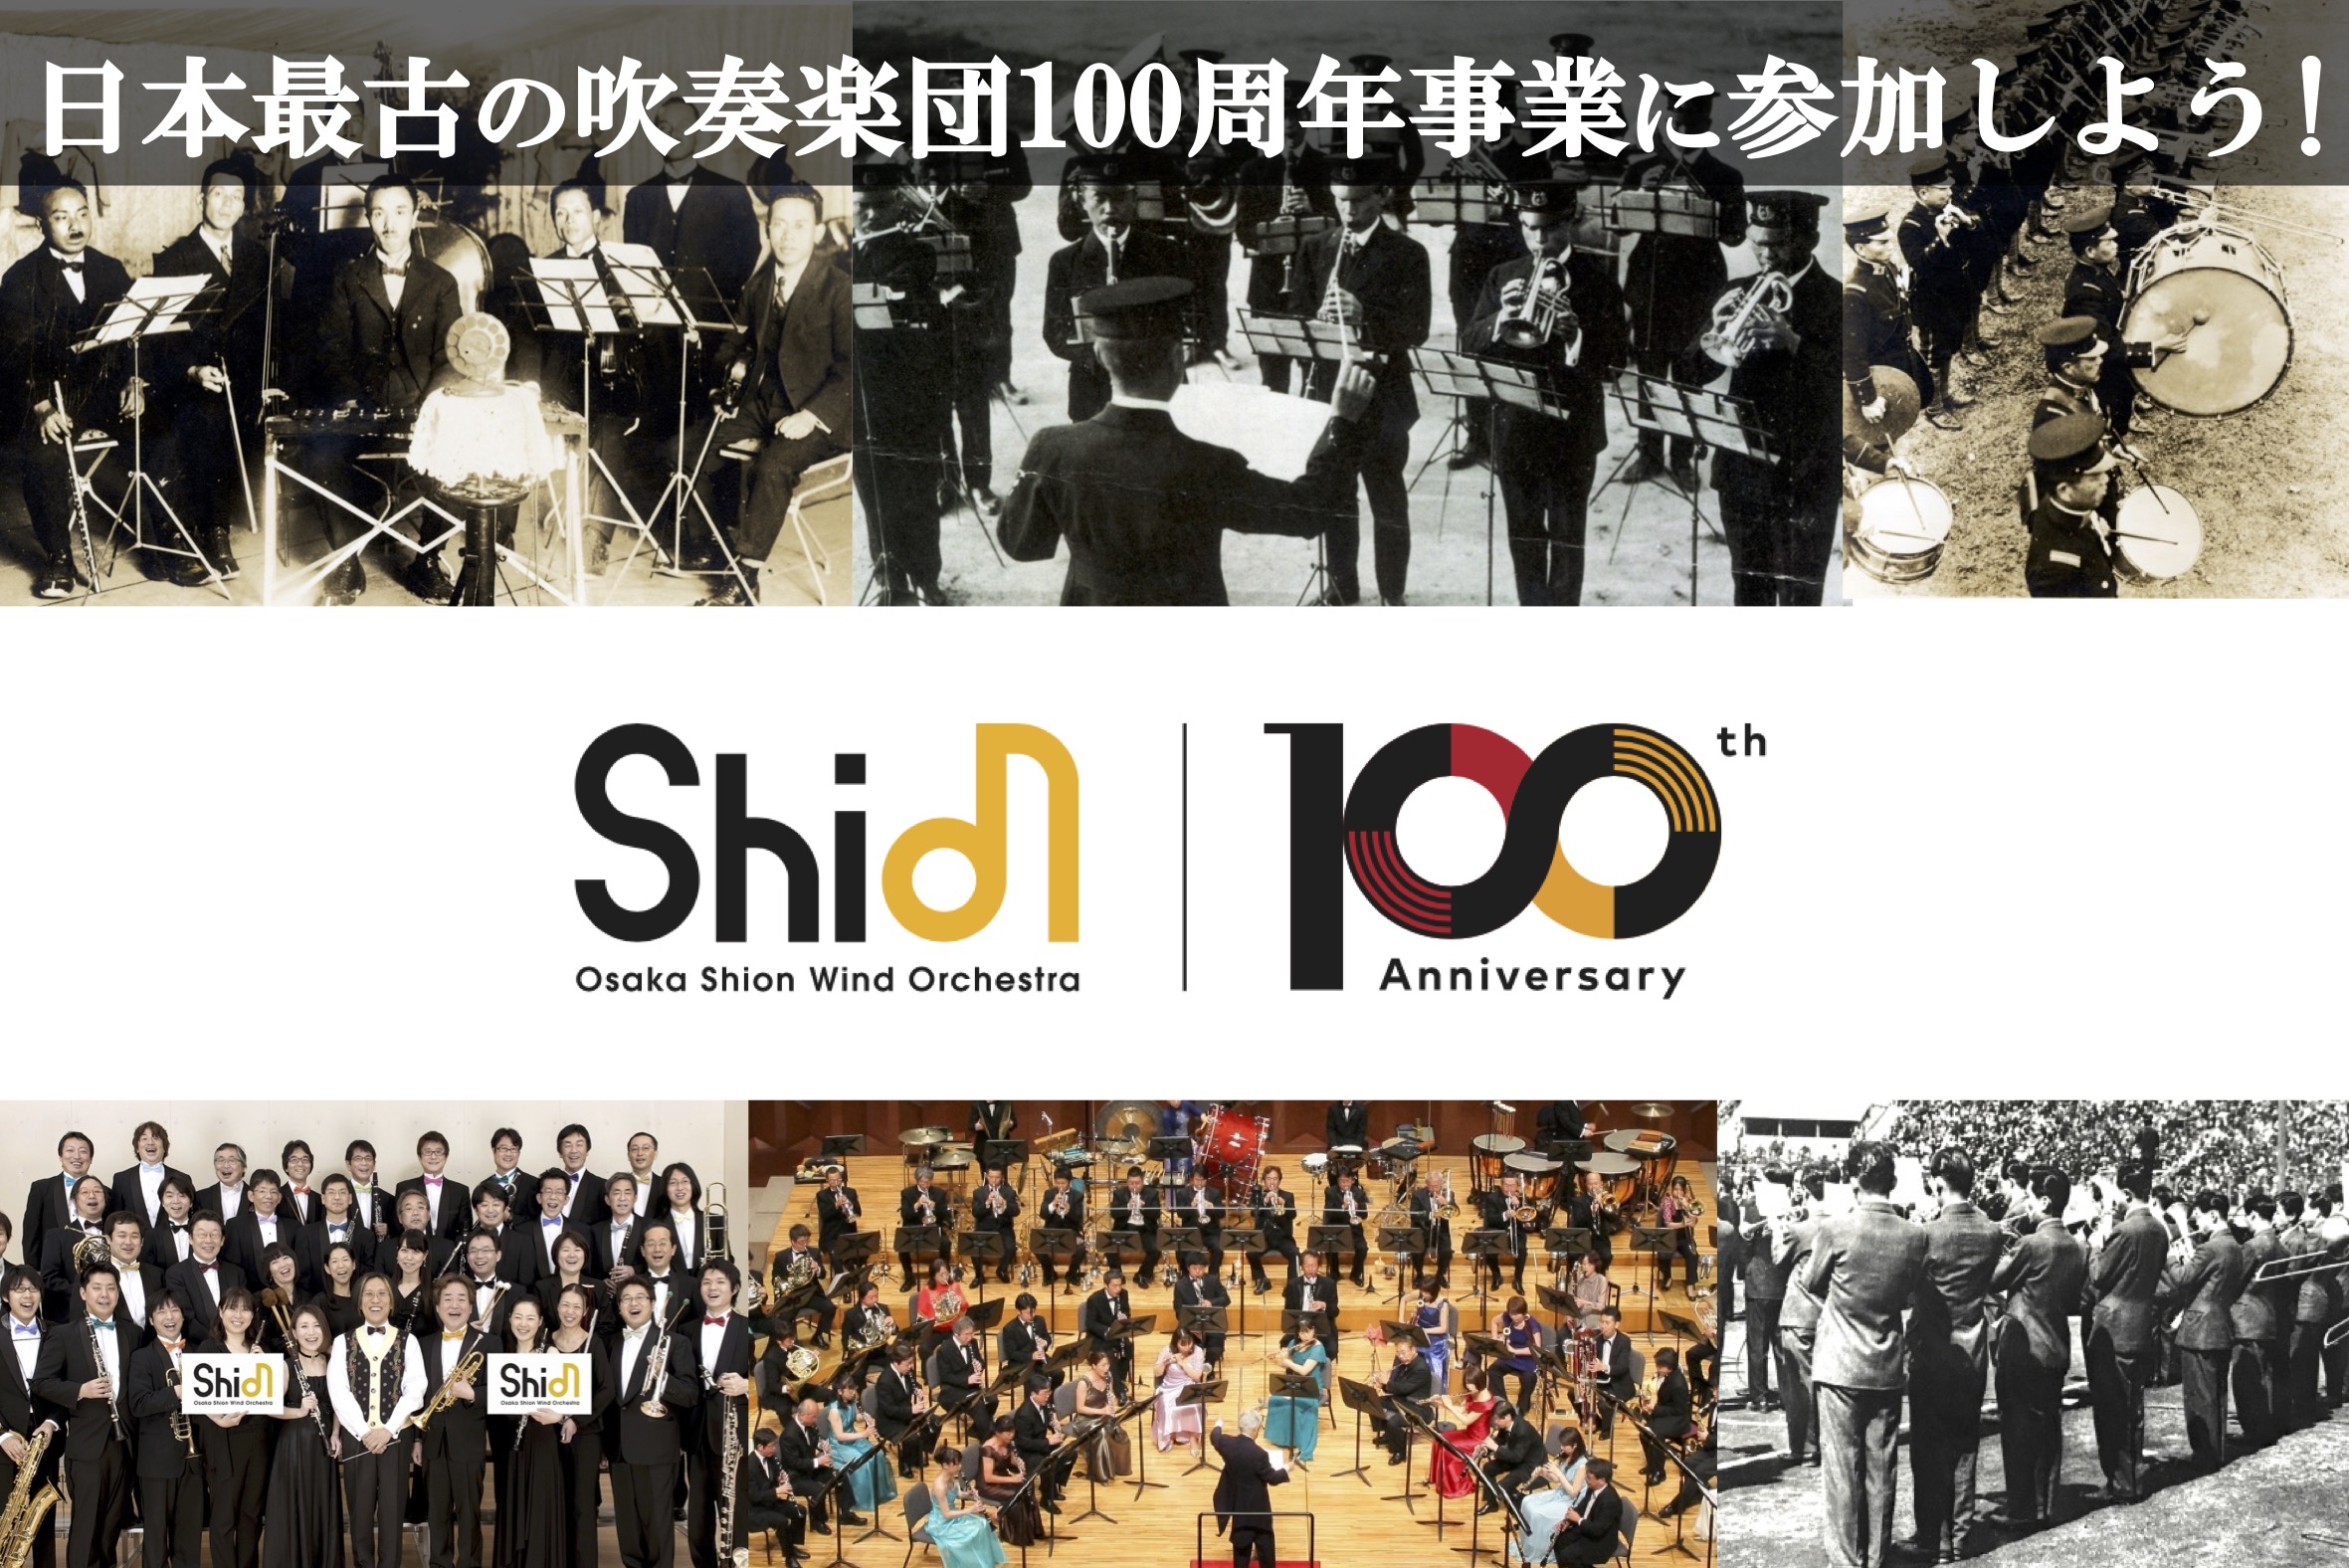 日本で最も長い歴史と伝統を誇るOsaka Shion Wind Orchestraの100周年事業に参加しよう❗️ | NEWSCAST